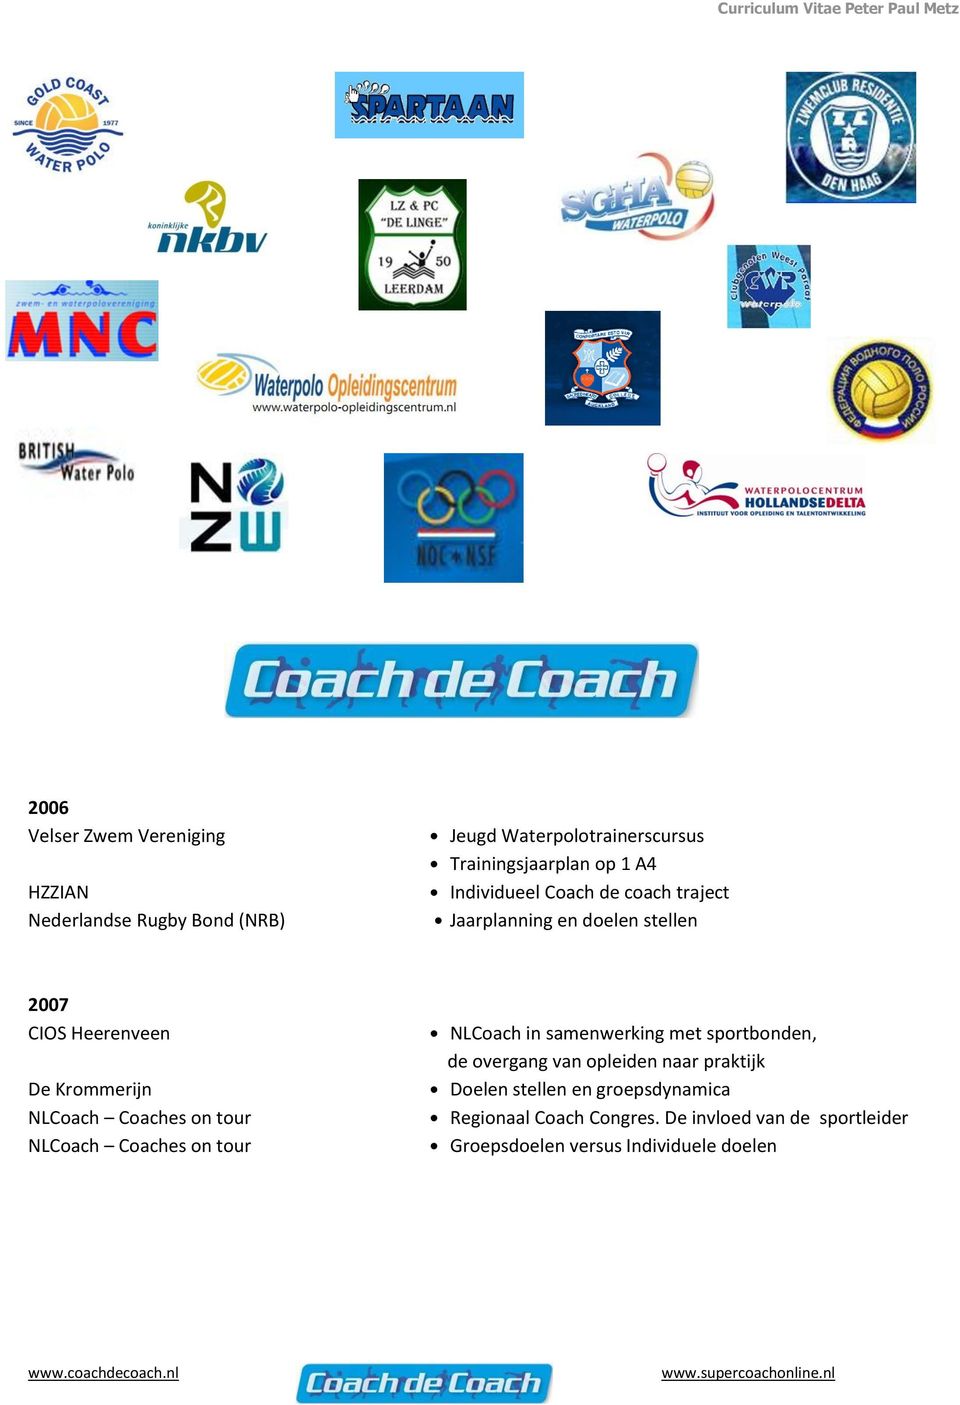 Coaches on tour NLCoach Coaches on tour NLCoach in samenwerking met sportbonden, de overgang van opleiden naar